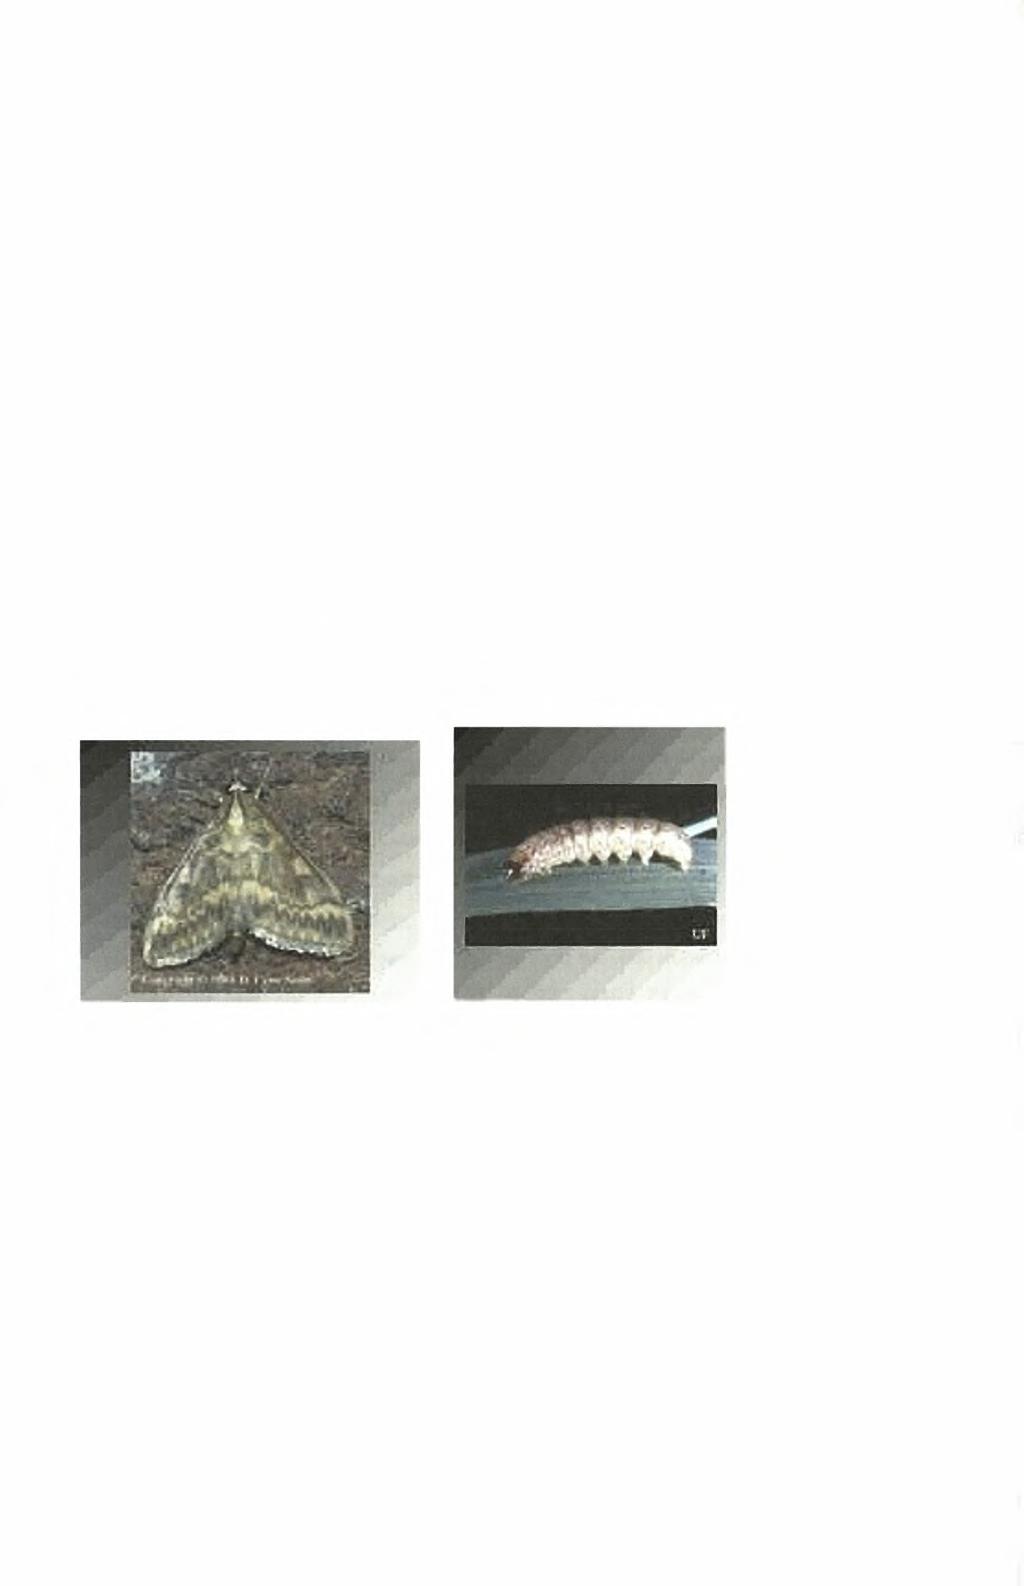 6.2 ΜΟΡΦΟΛΟΓΙΑ Το ενήλικο (Εικόνα 6α) έχει άνοιγμα πτερύγων 2-3,3 cm. Το αρσενικό είναι ελαφρά μικρότερο με πιο σκούρα απόχρωση των πτερύγων.